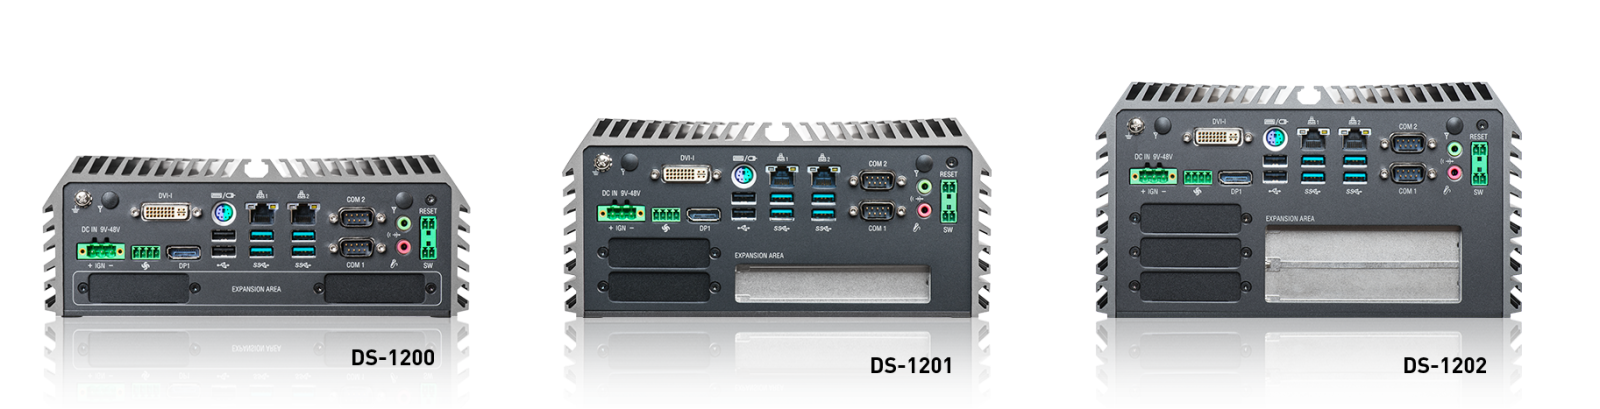 DS-1200系列產品